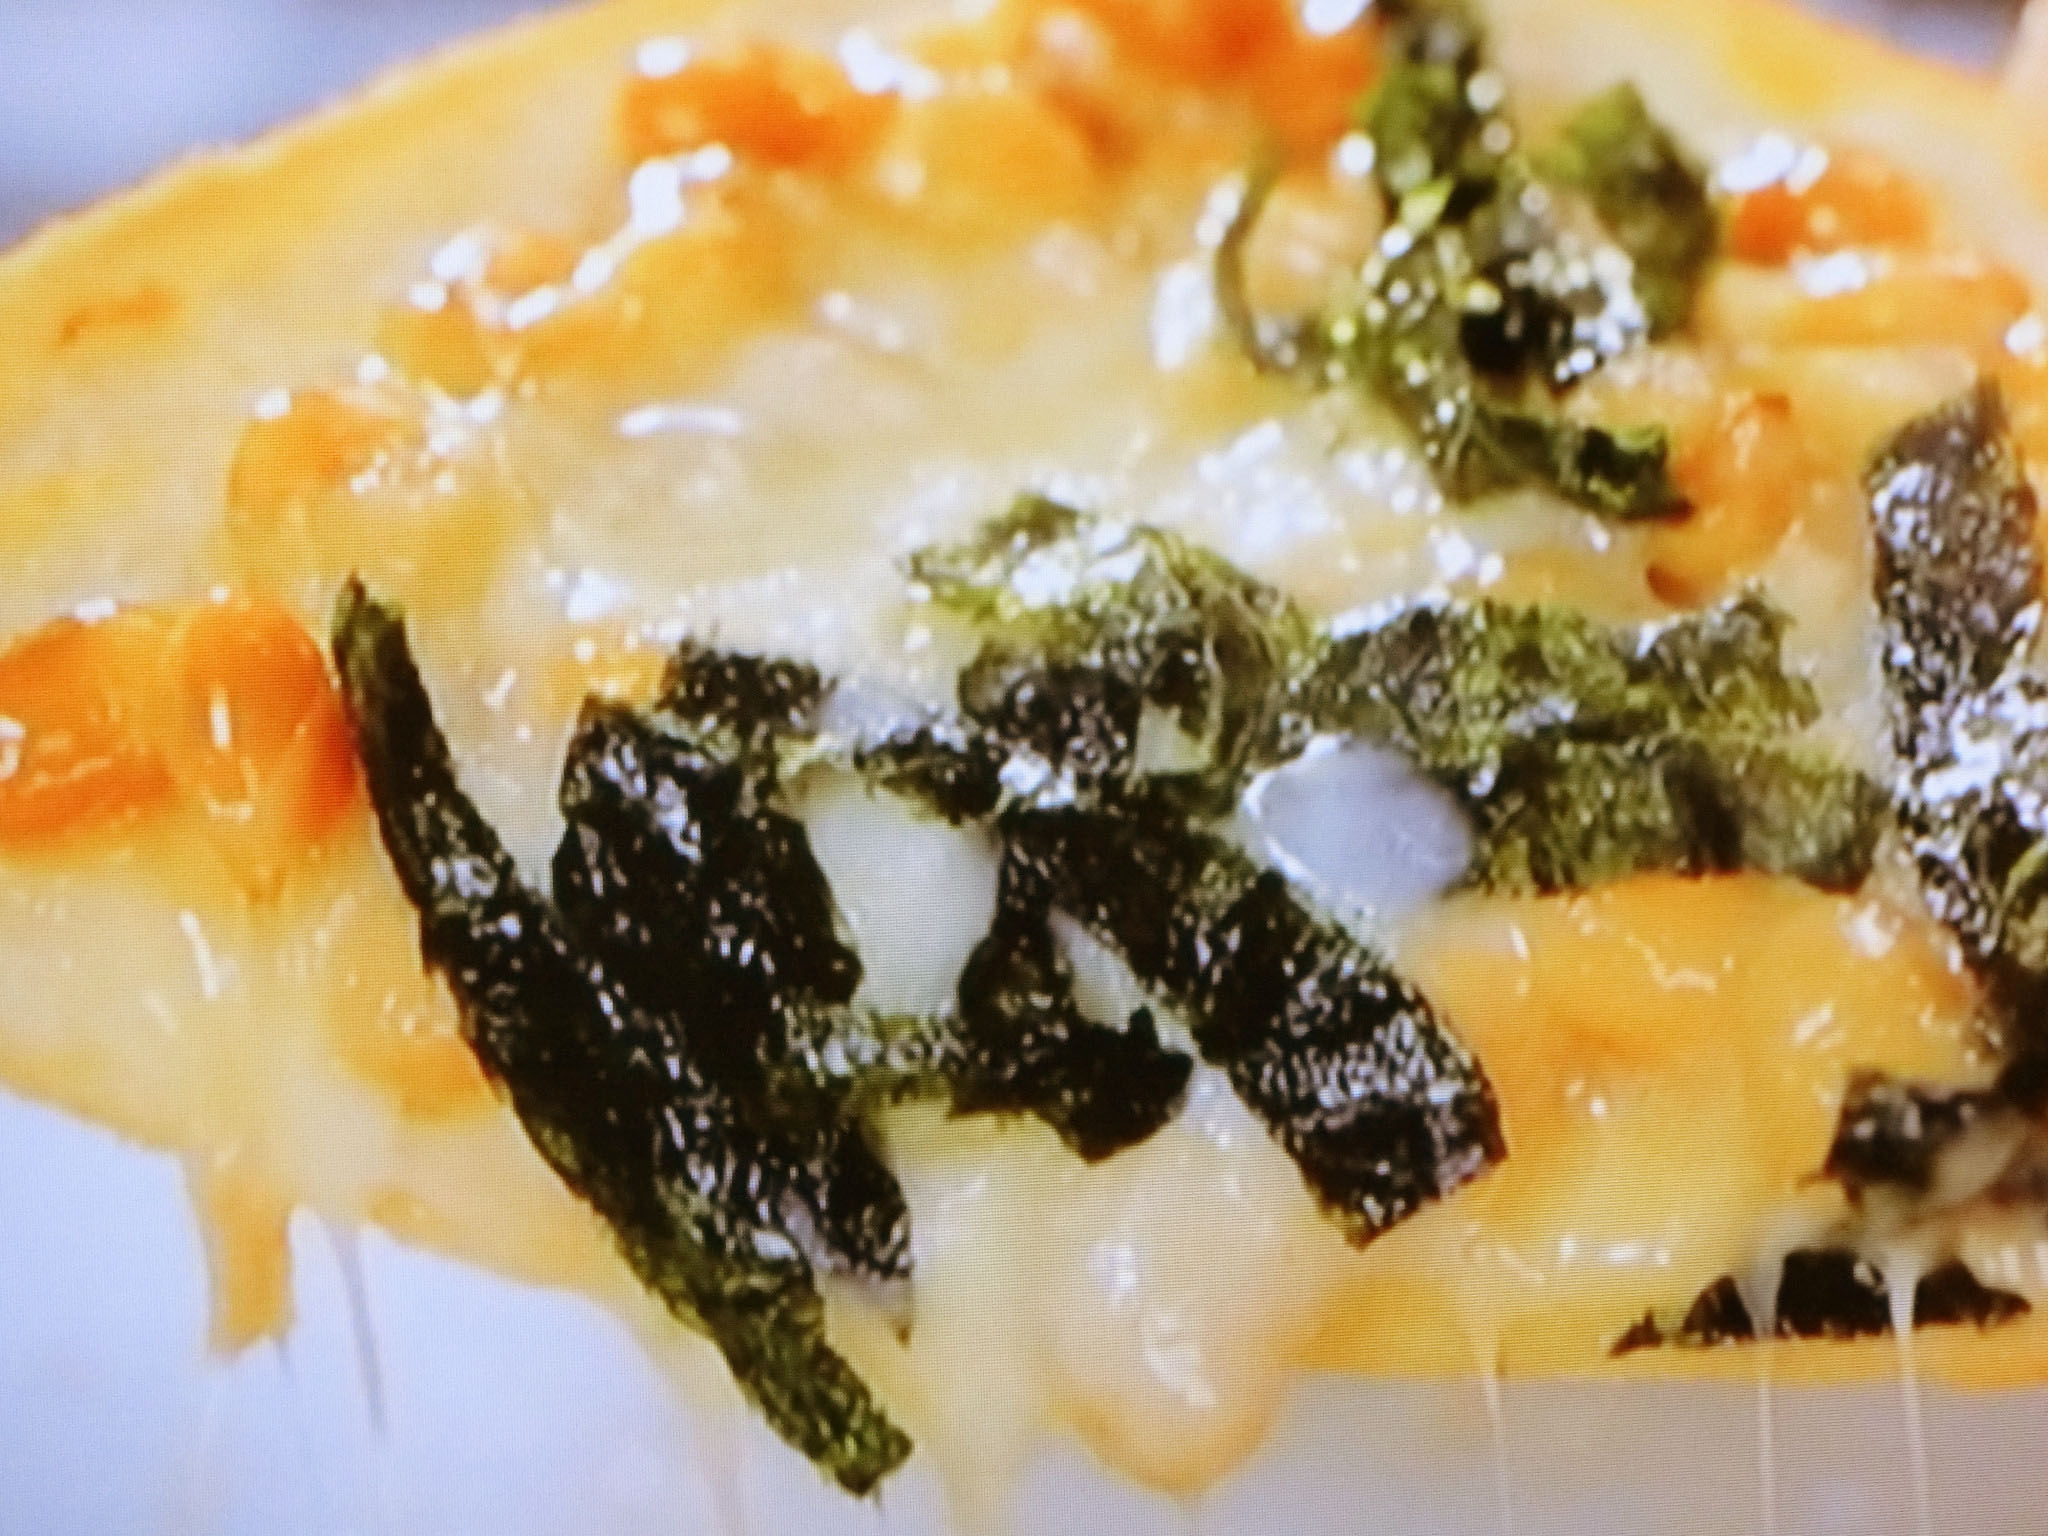 相葉マナブ 納豆チーズトーストの料理レシピ おさらいキッチン